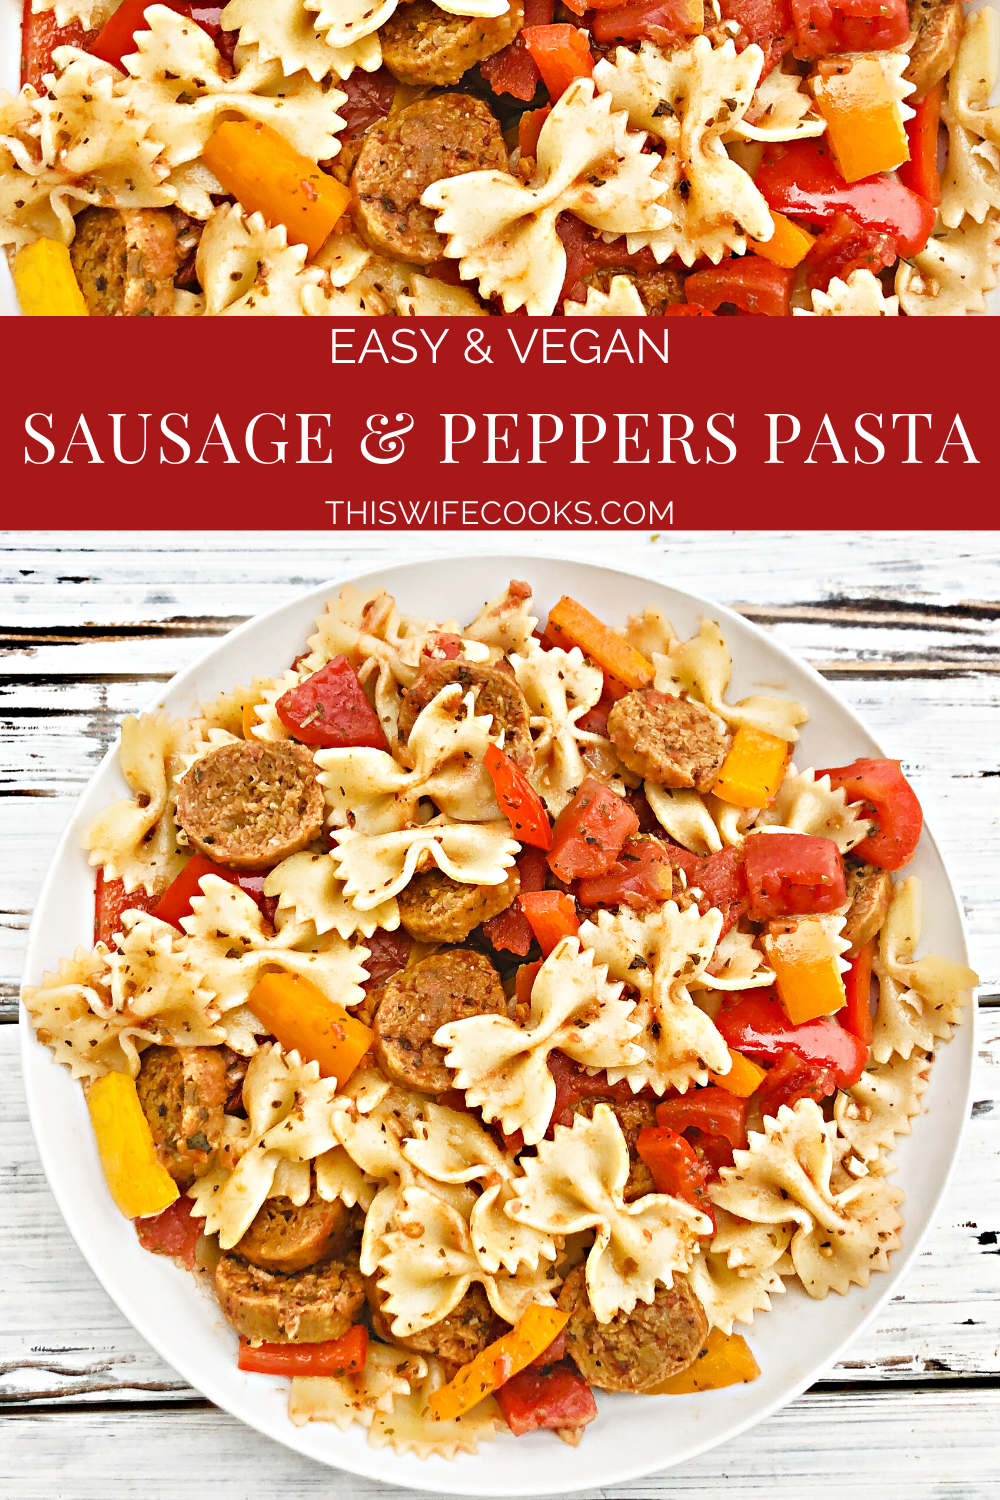 Vegan Sausage and Peppers Pasta - Szybki i łatwy roślinny obiad na patelni wypełniony pikantną włoską kiełbasą, kolorową papryką i makaronem podanym razem w lekkim i ziemistym sosie pomidorowym. Gotowy do podania w 30 minut lub mniej!#sausageandpeppers #easyvegandinners #30minutemeals #vegansausagerecipes #thiswifecooksrecipes #quickandeasydinners #veganquarantinecooking #sausageandpepperspasta via @thiswifecooks